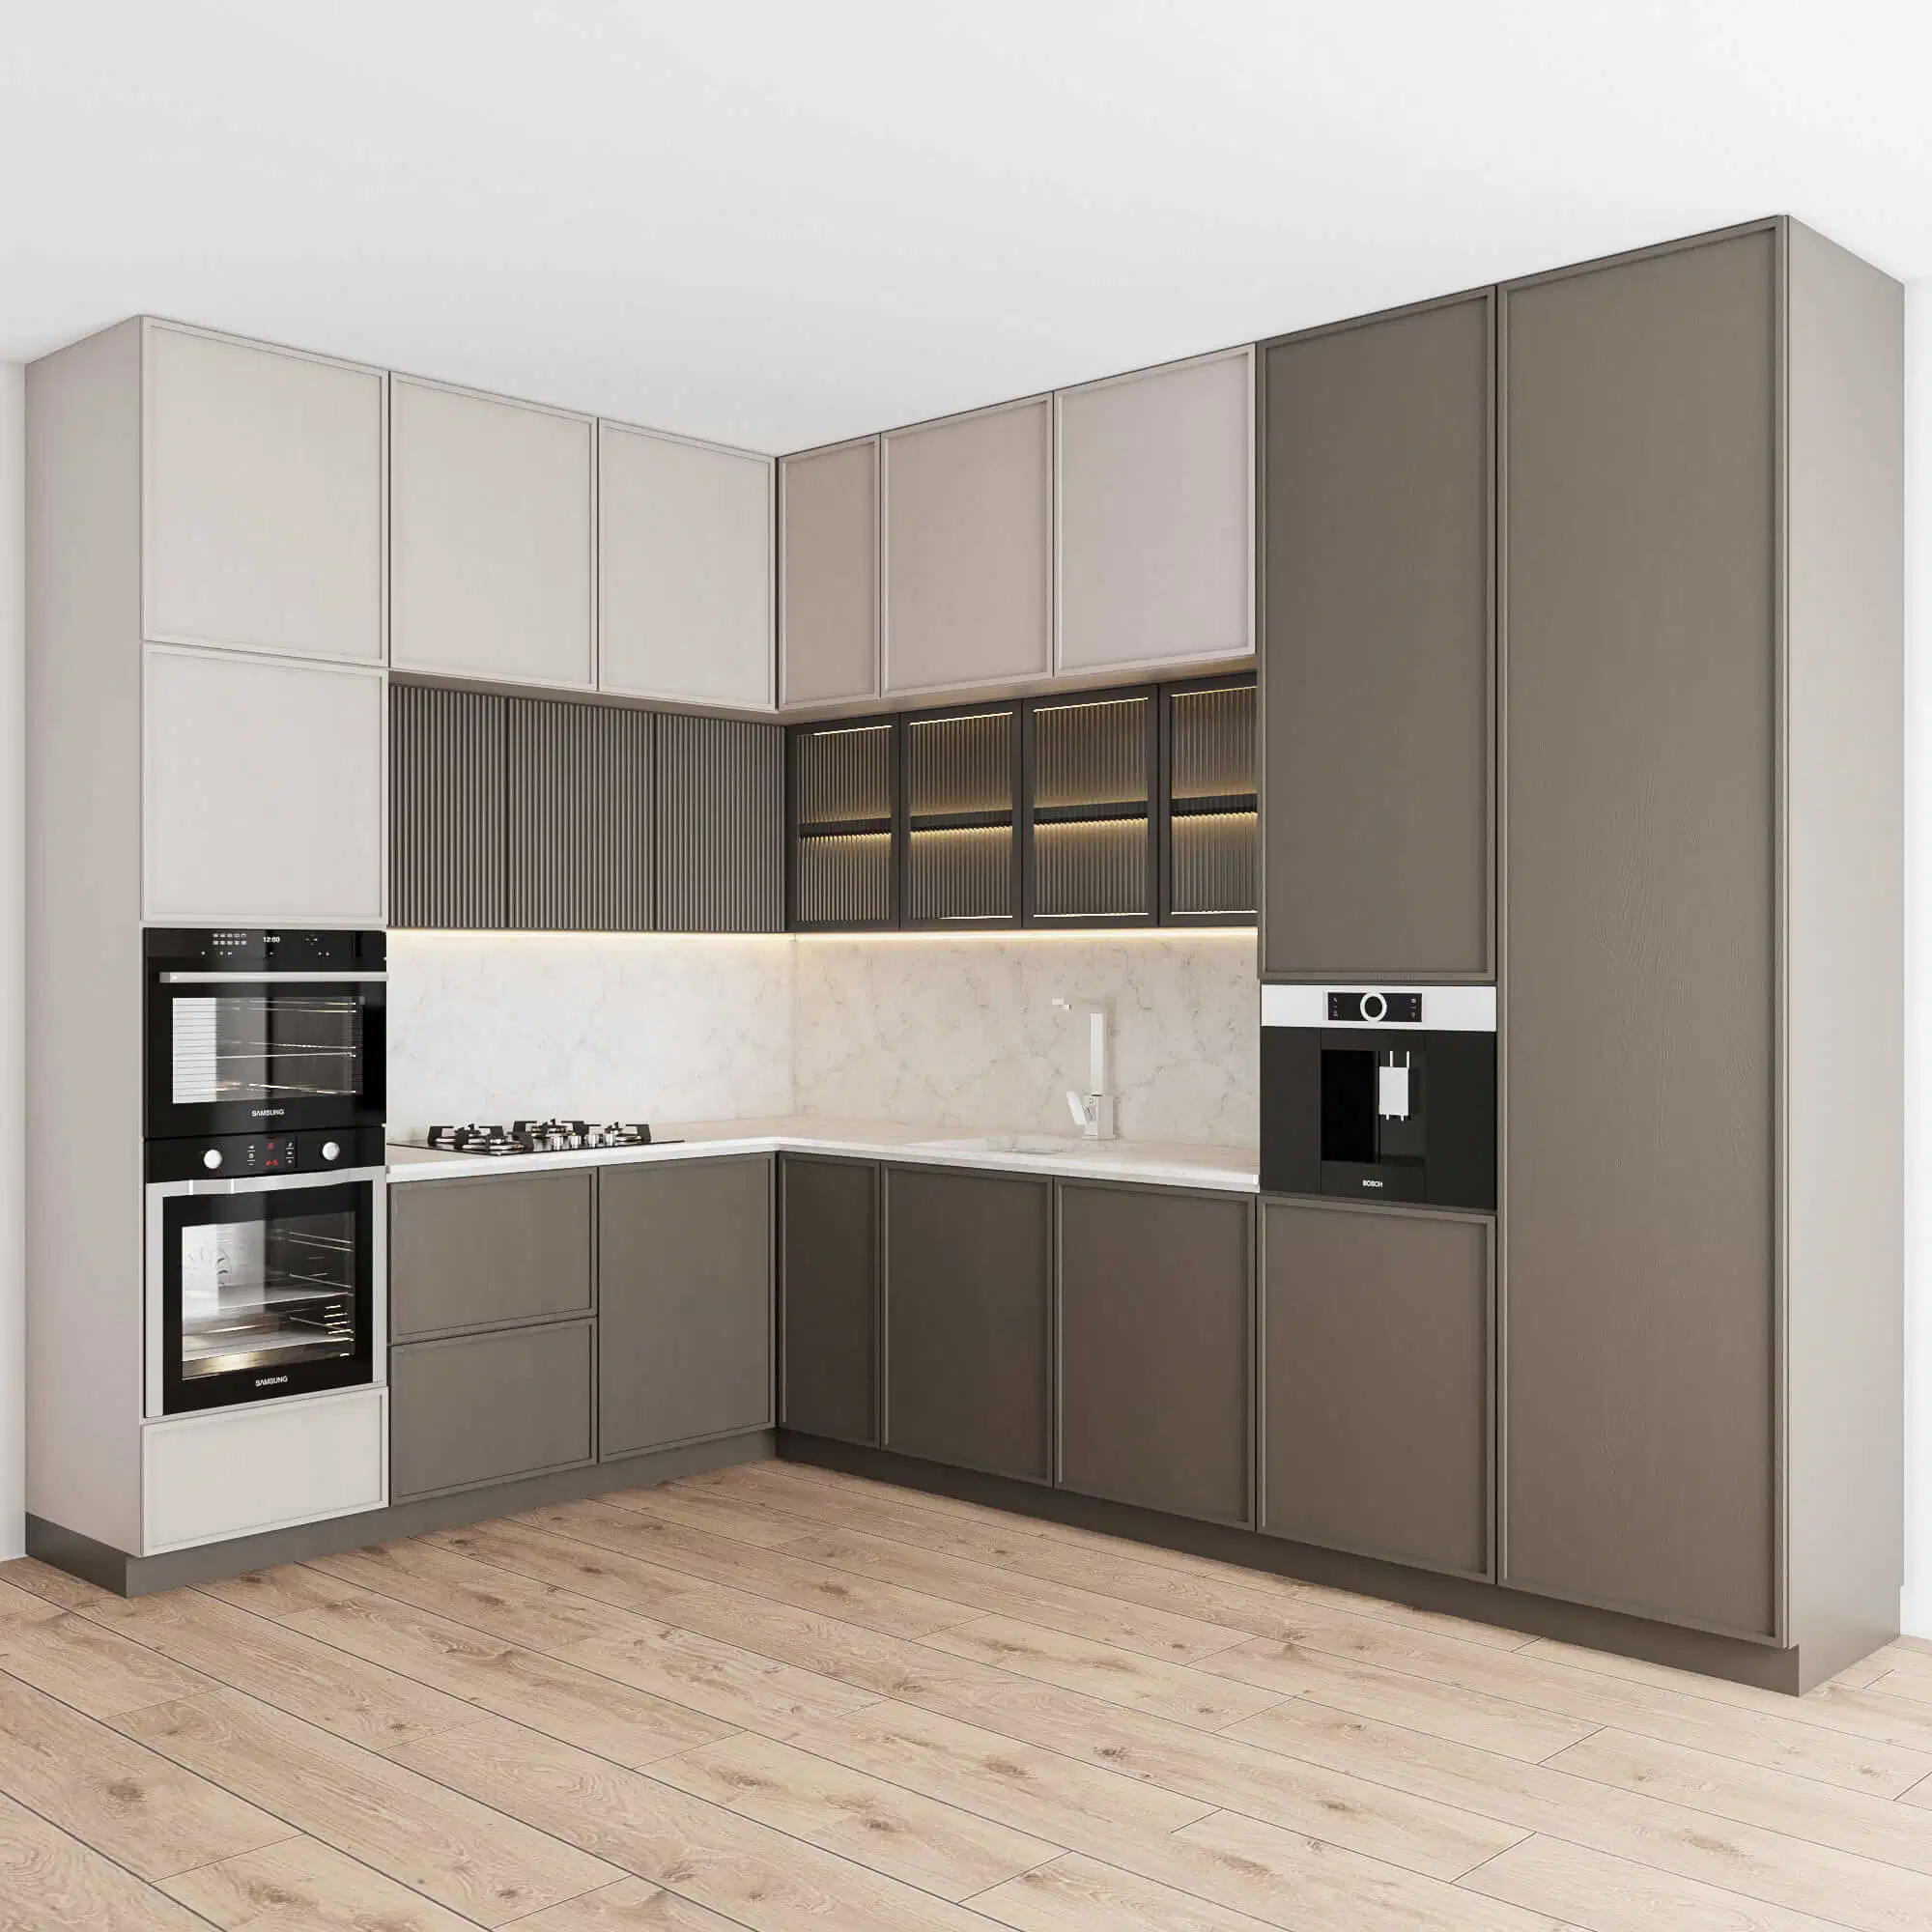 PA 2023 Smart Home and Kitchen armário de armazenamento moderno personalizado Shaker Kitchen mobiliário